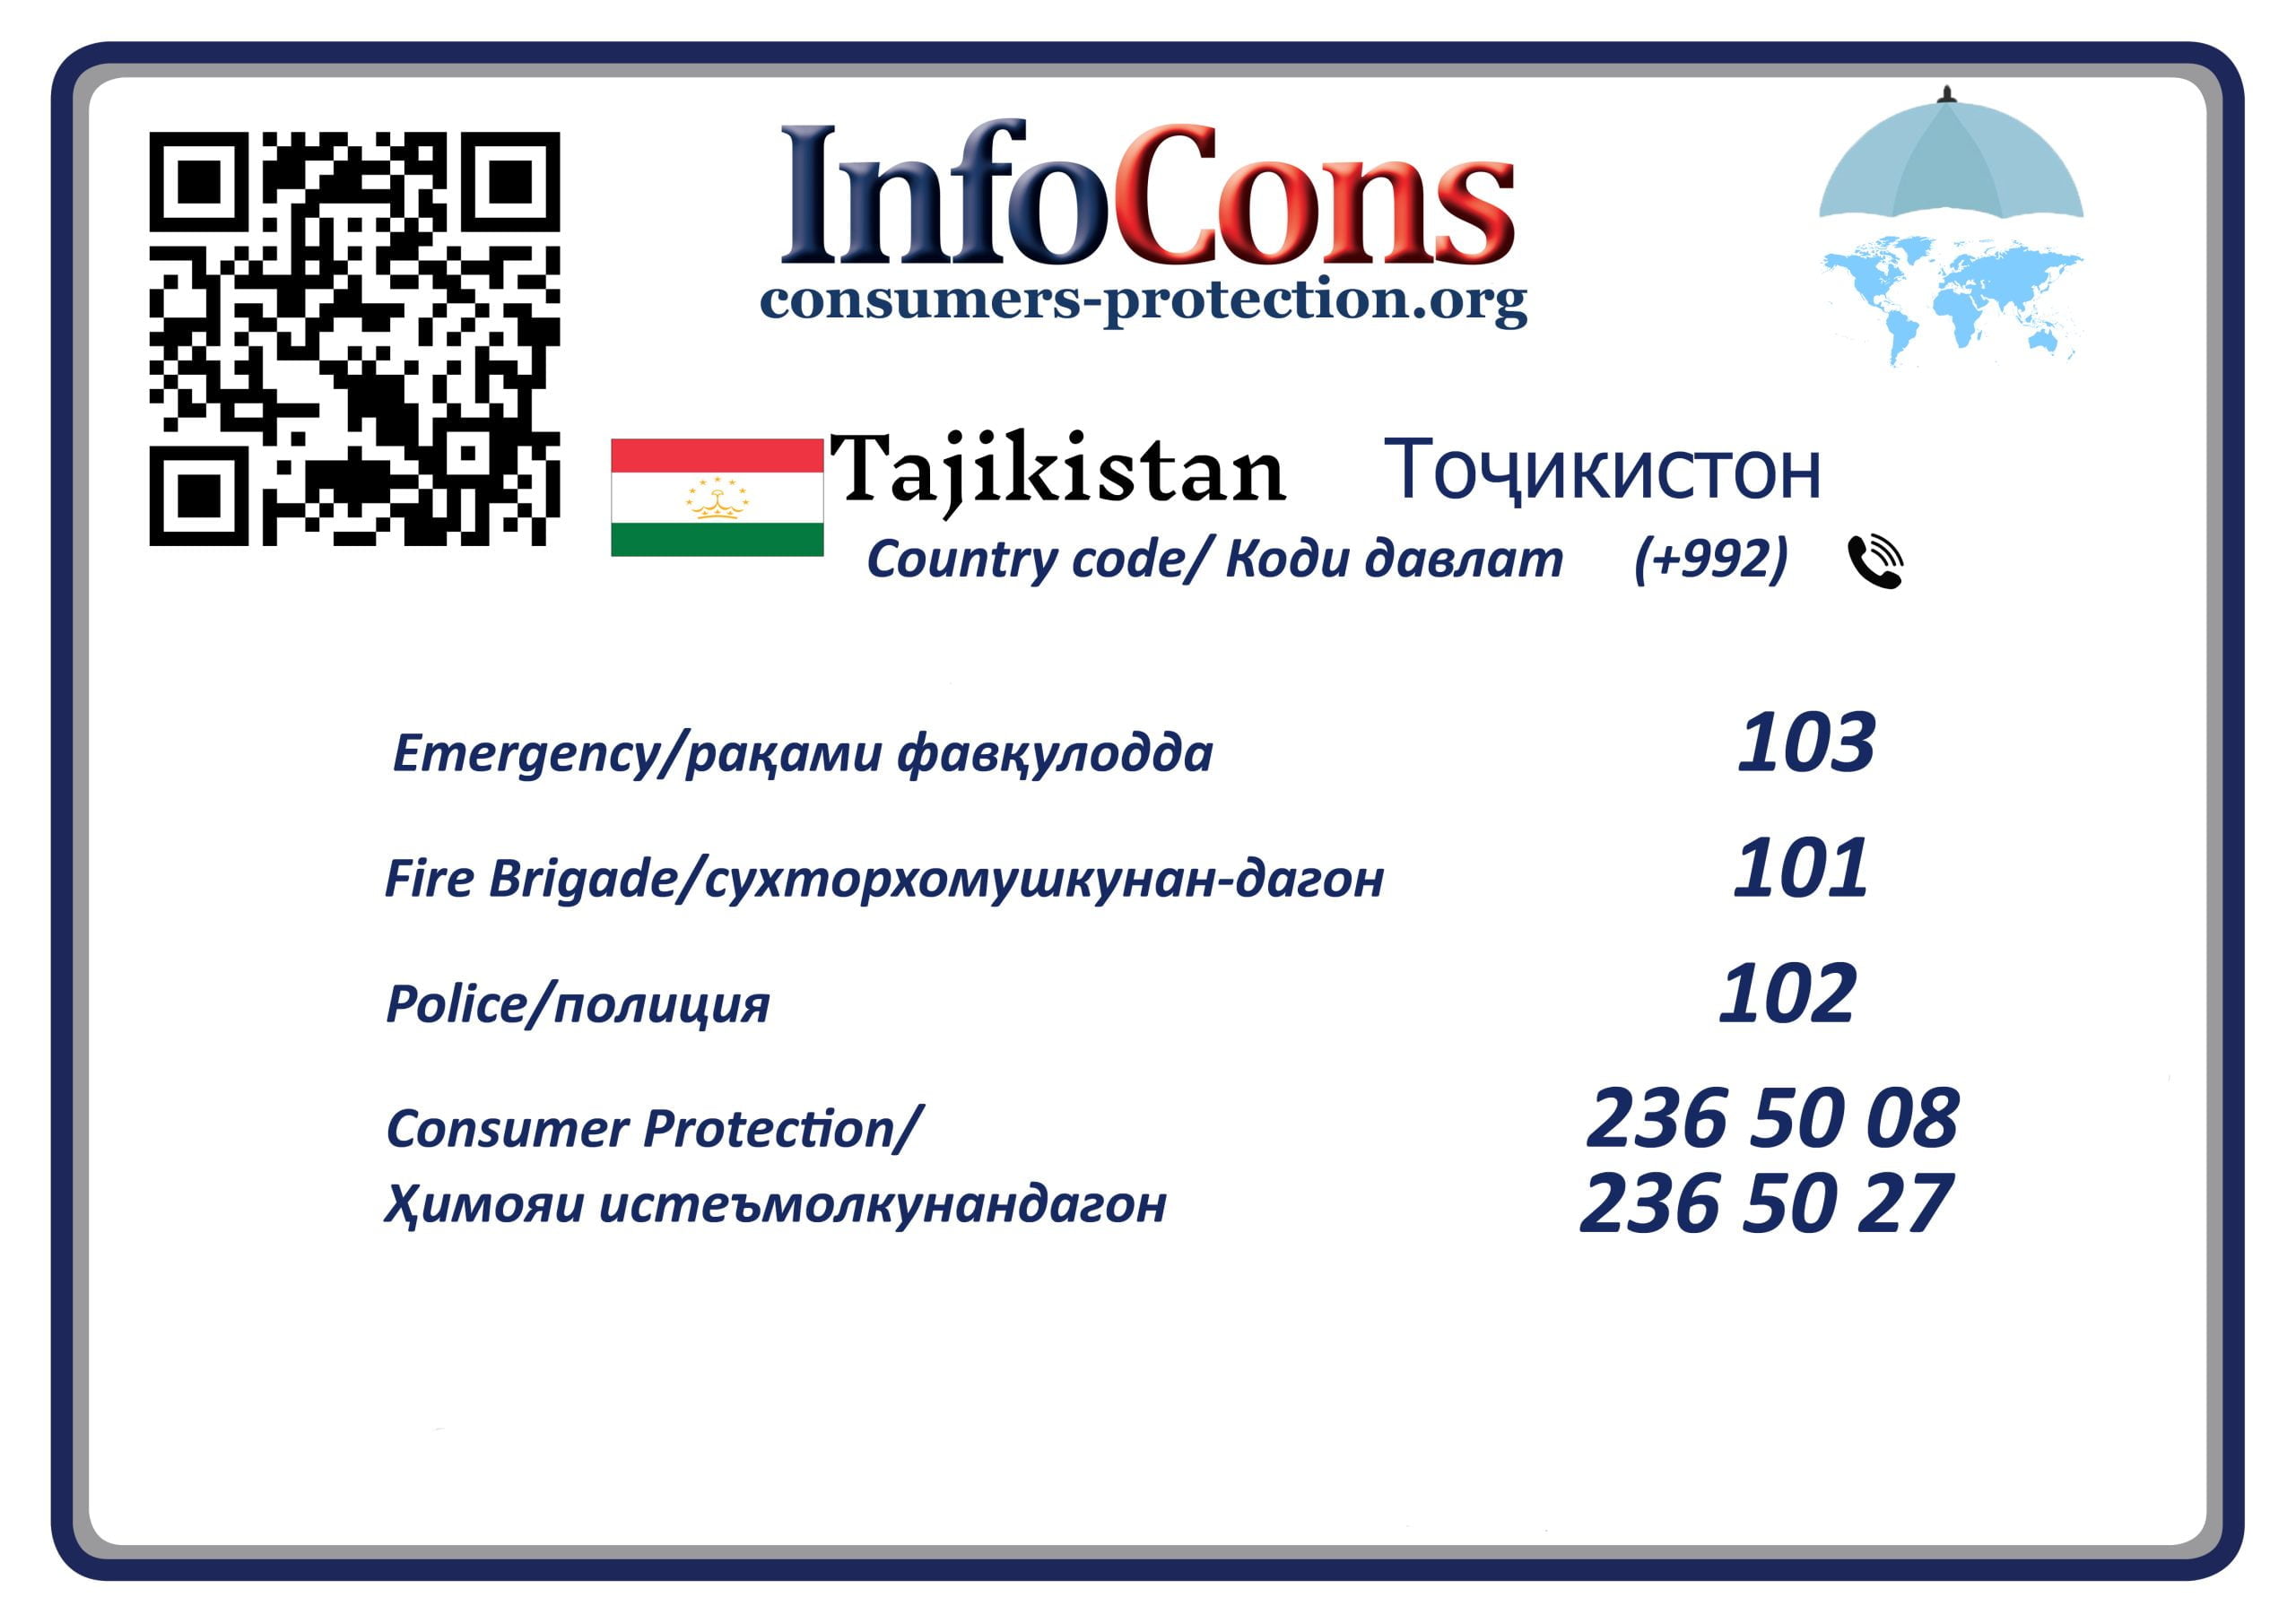 Ҳимояи истеъмолкунандагони Тоҷикистон - Consumers Protection Tajikistan